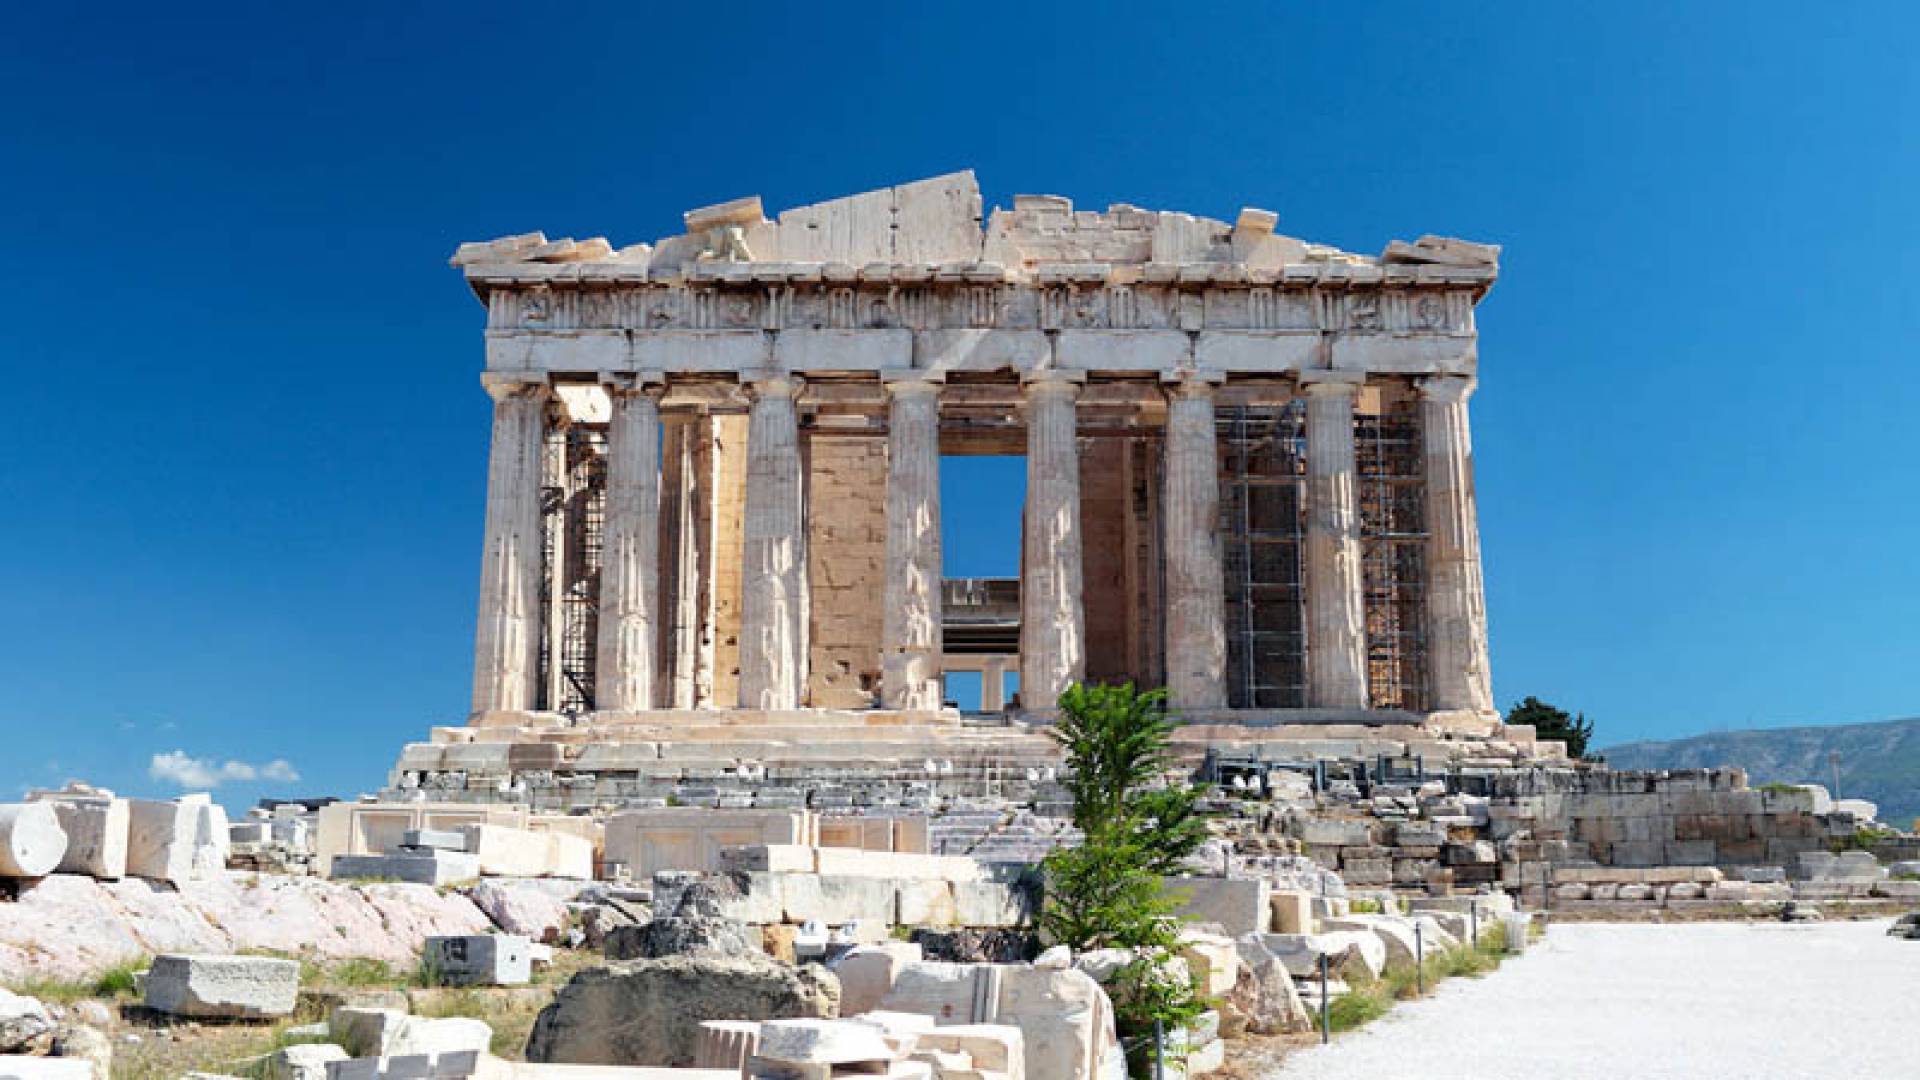 ACROPOLIS, Parthenon Second Part